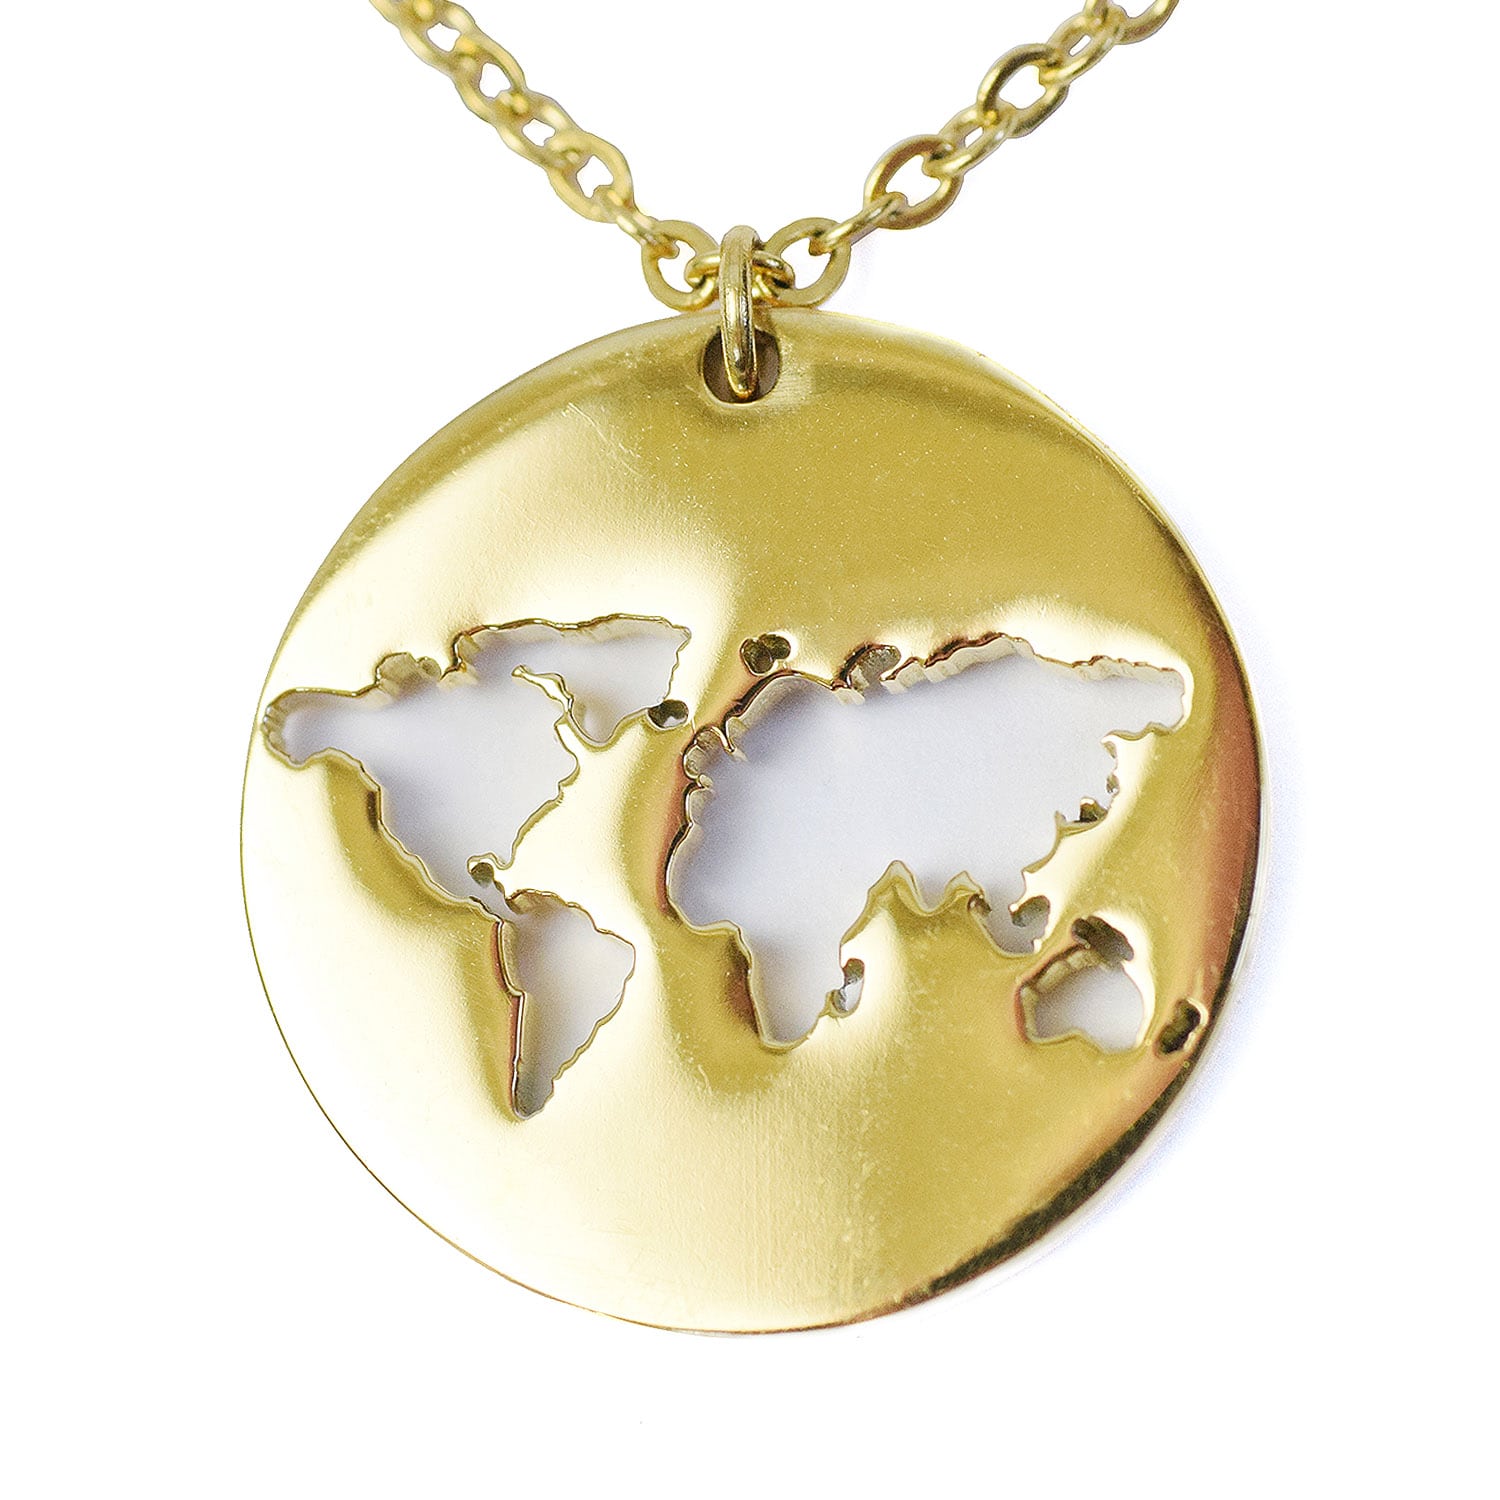 Die Weltkarte Kette gold eignet sich perfekt als Geschenk.